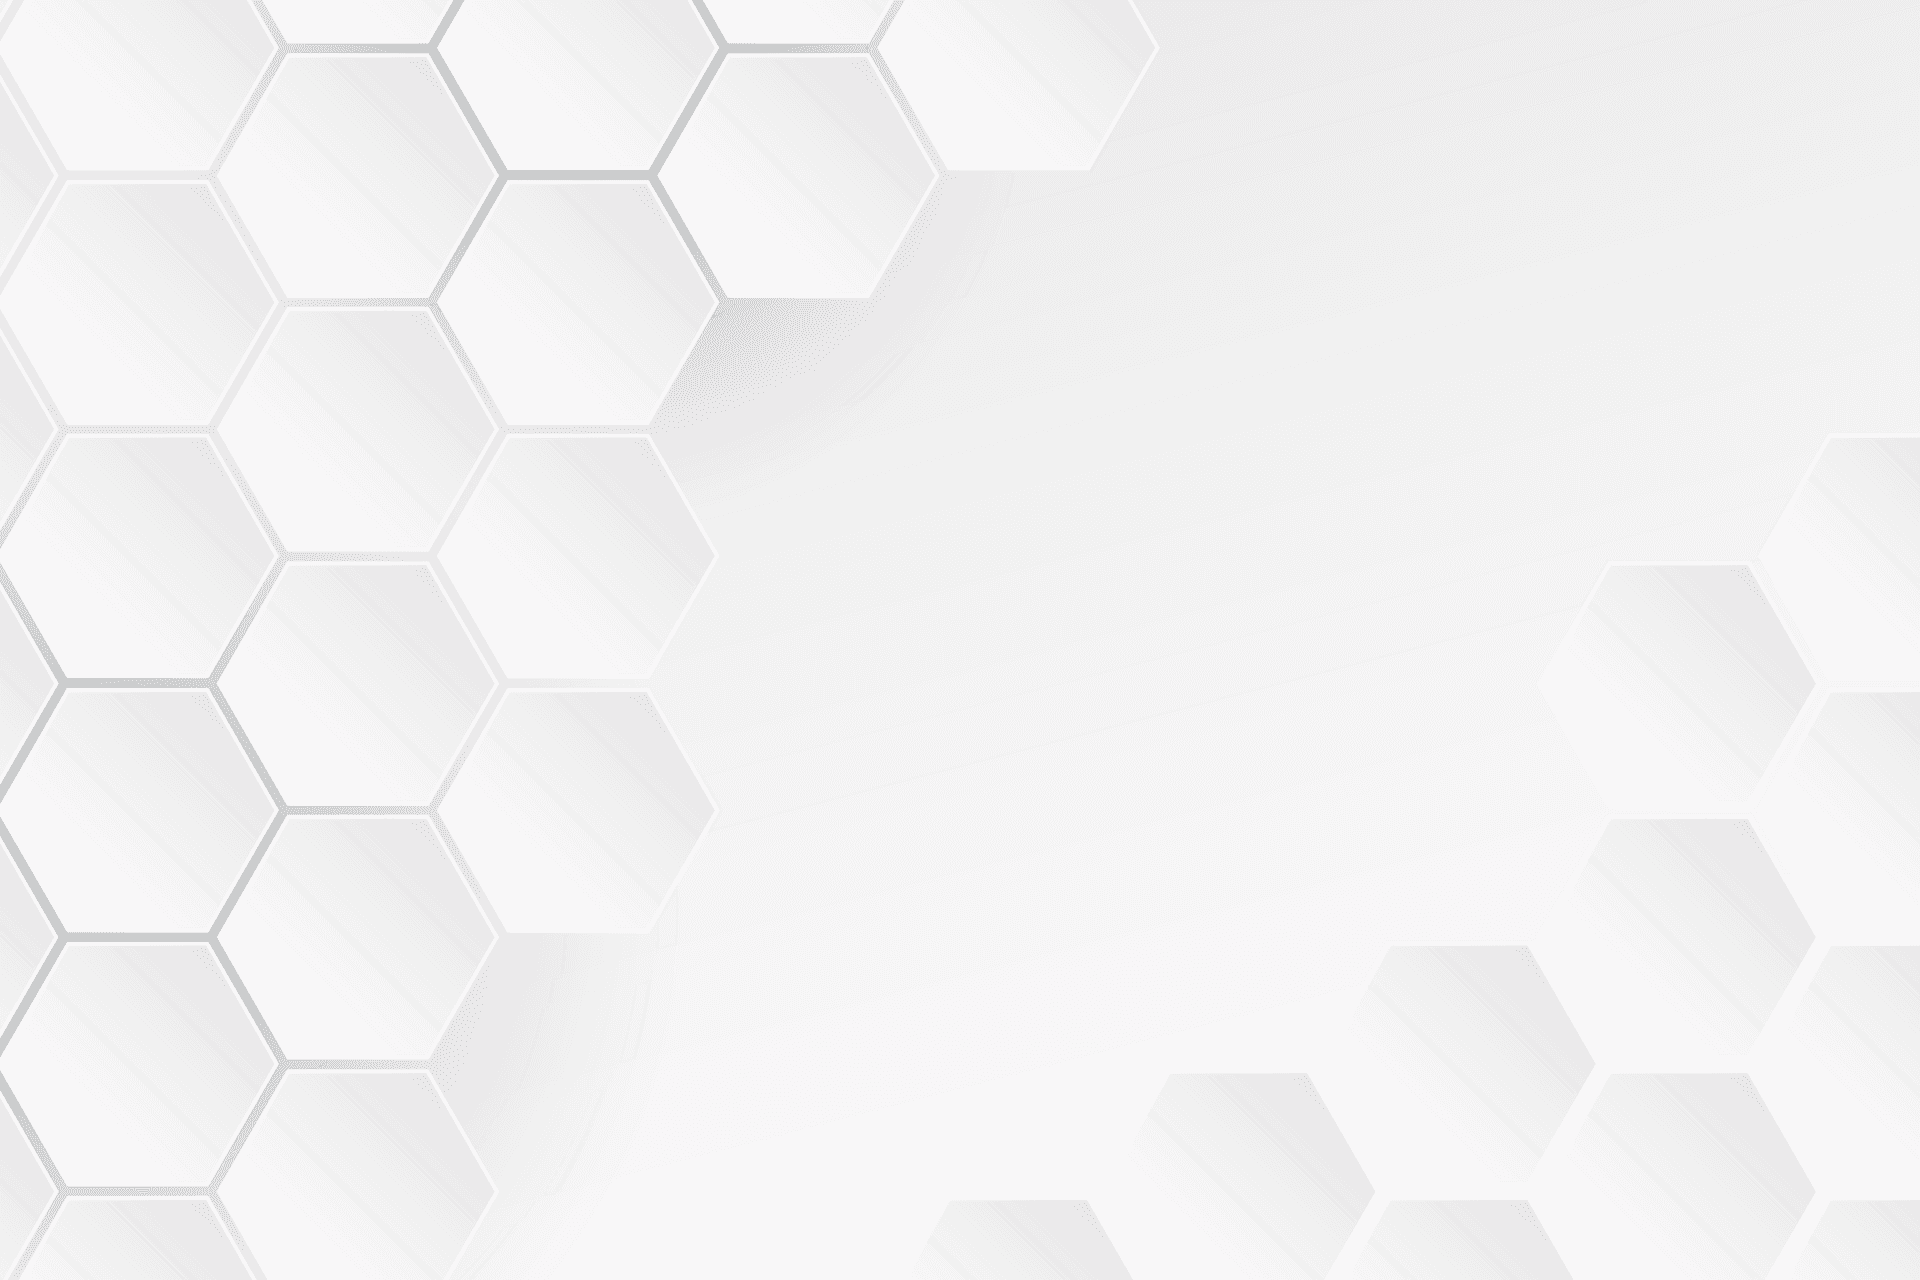 Hexagons in a Modern Art Pattern